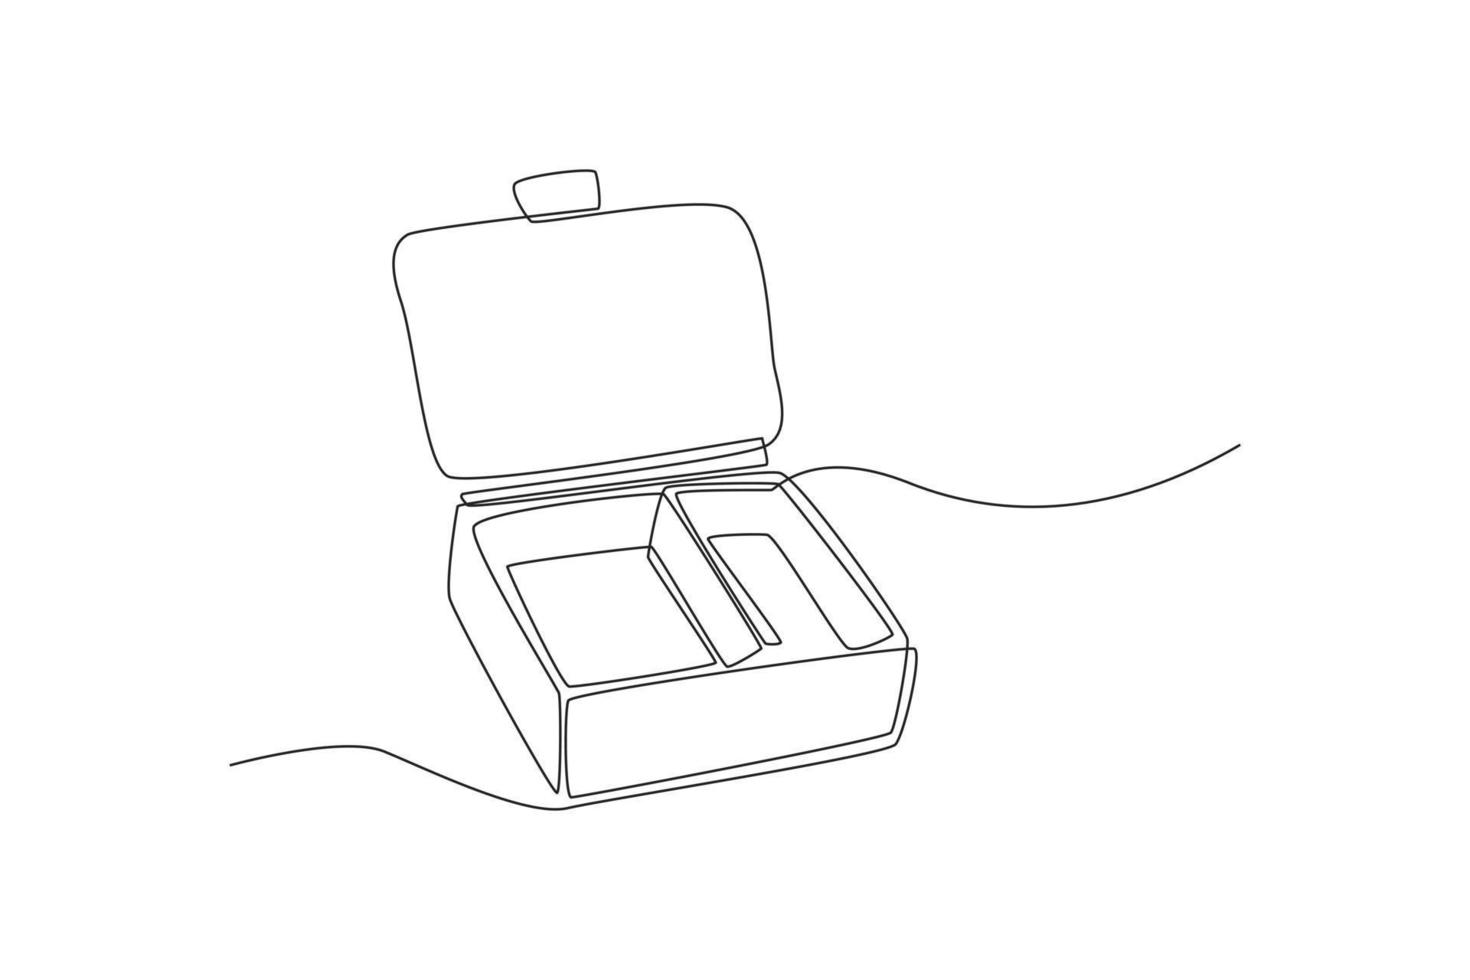 Caja de papel de dibujo de una sola línea para almacenamiento de alimentos. concepto de cero residuos. ilustración de vector gráfico de diseño de dibujo de línea continua.